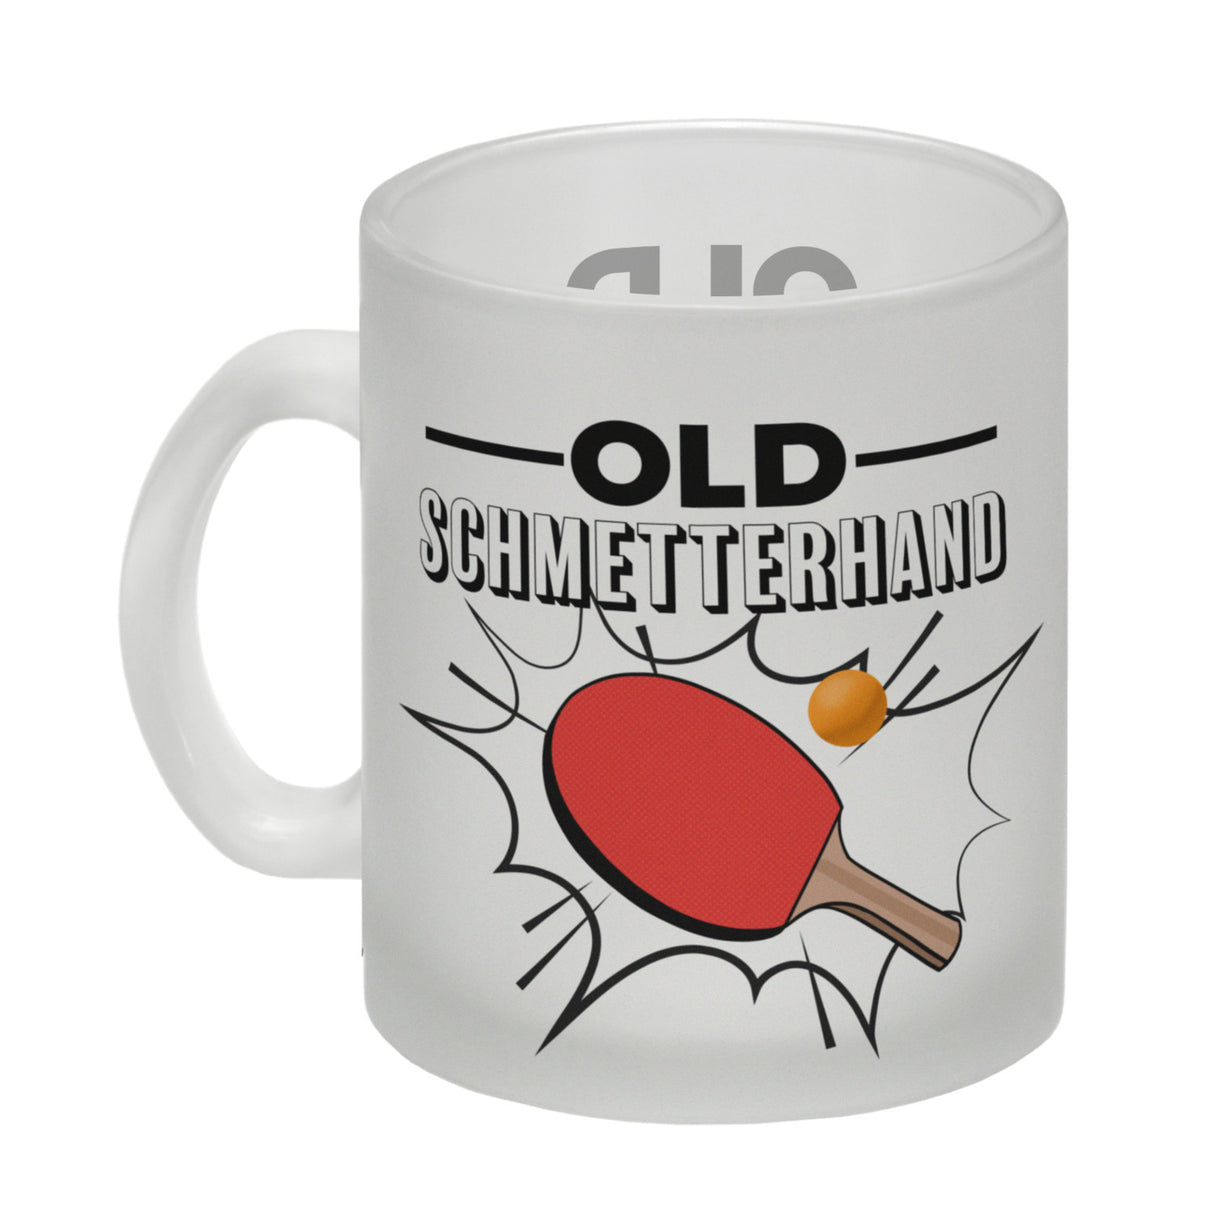 Old Schmetterhand Tischtennis Wortspiel Kaffeebecher